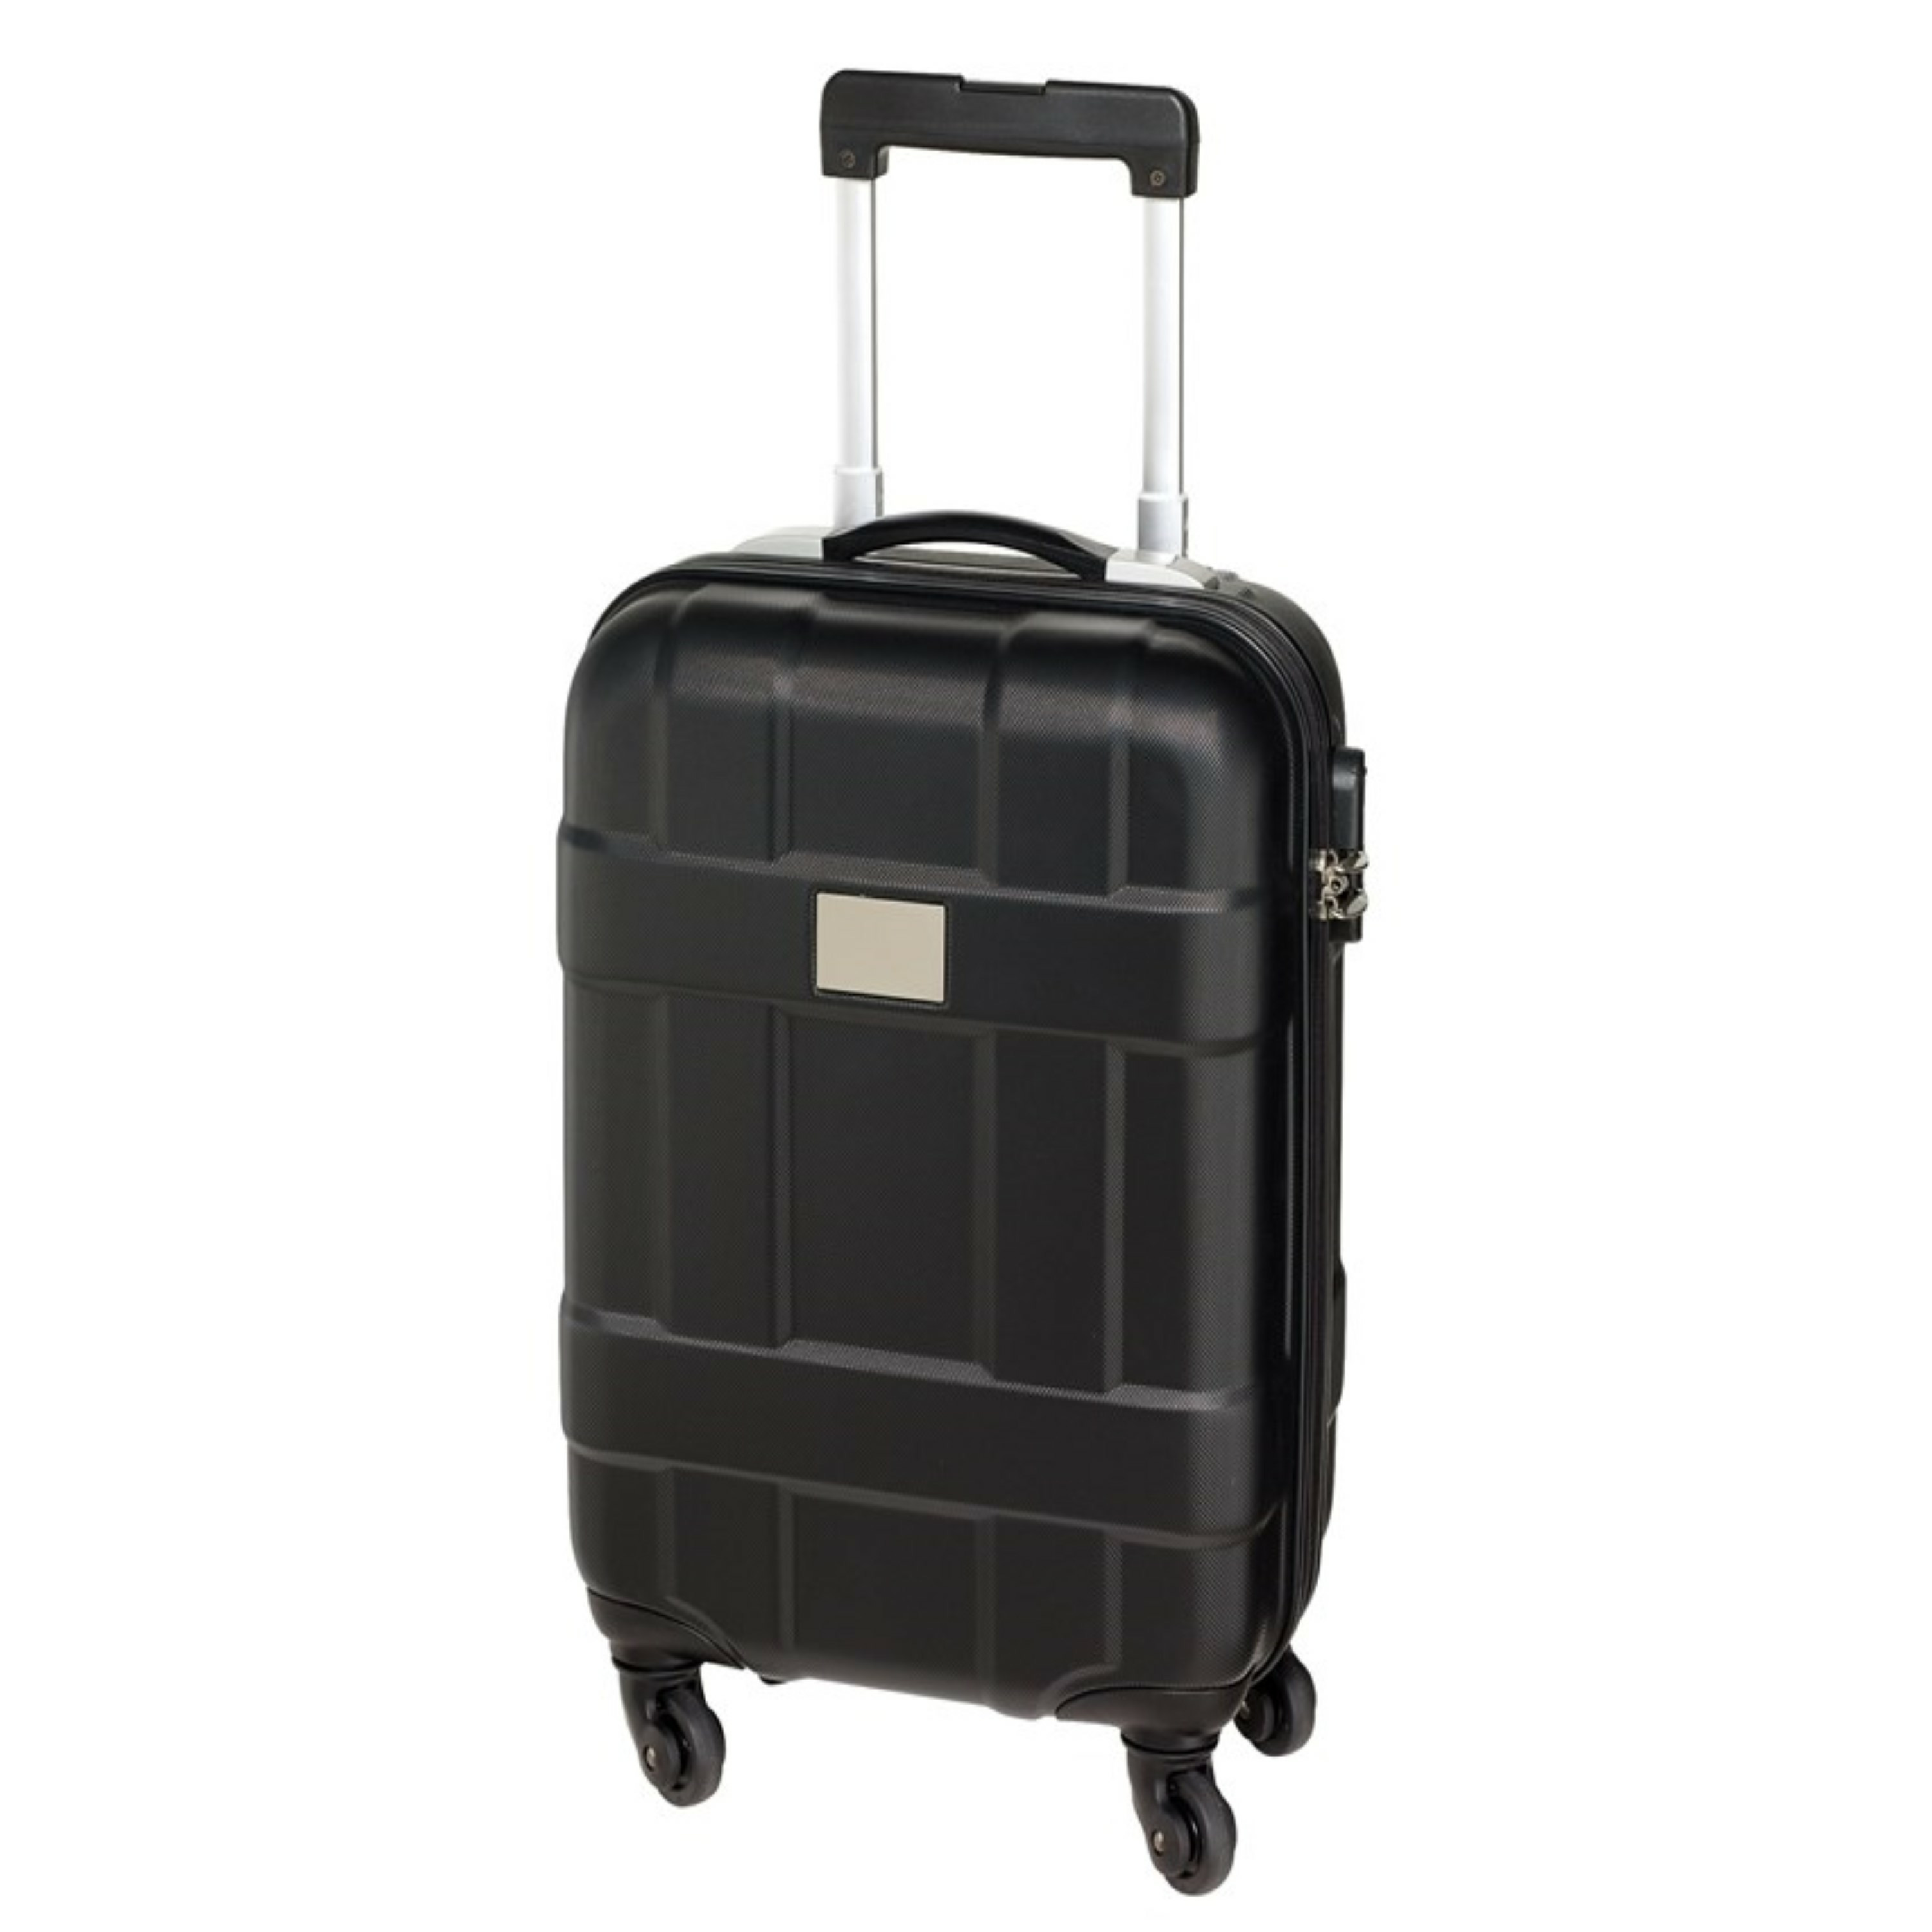 Cabine handbagage reis trolley koffer met zwenkwielen 55 x 35 x 20 cm zwart